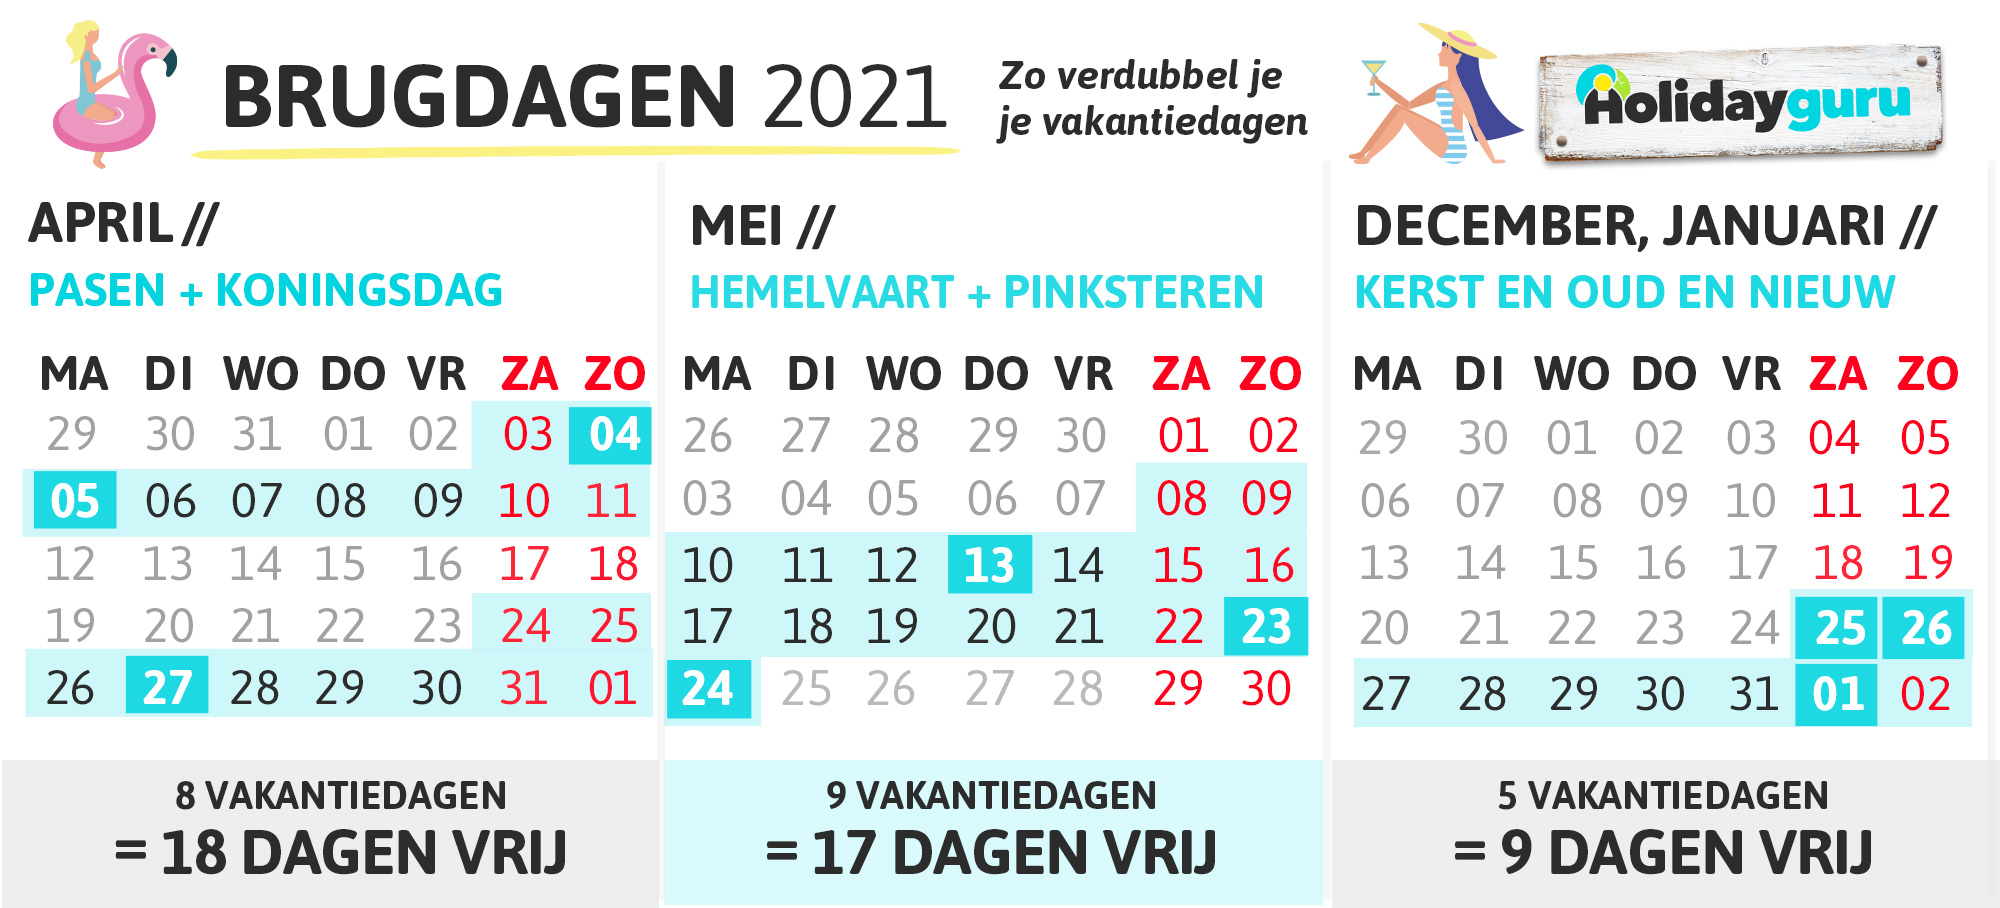 Vrije Dagen Belgie 2021 Brugdagen 2021 Verdubbe Je Vakantiedagen